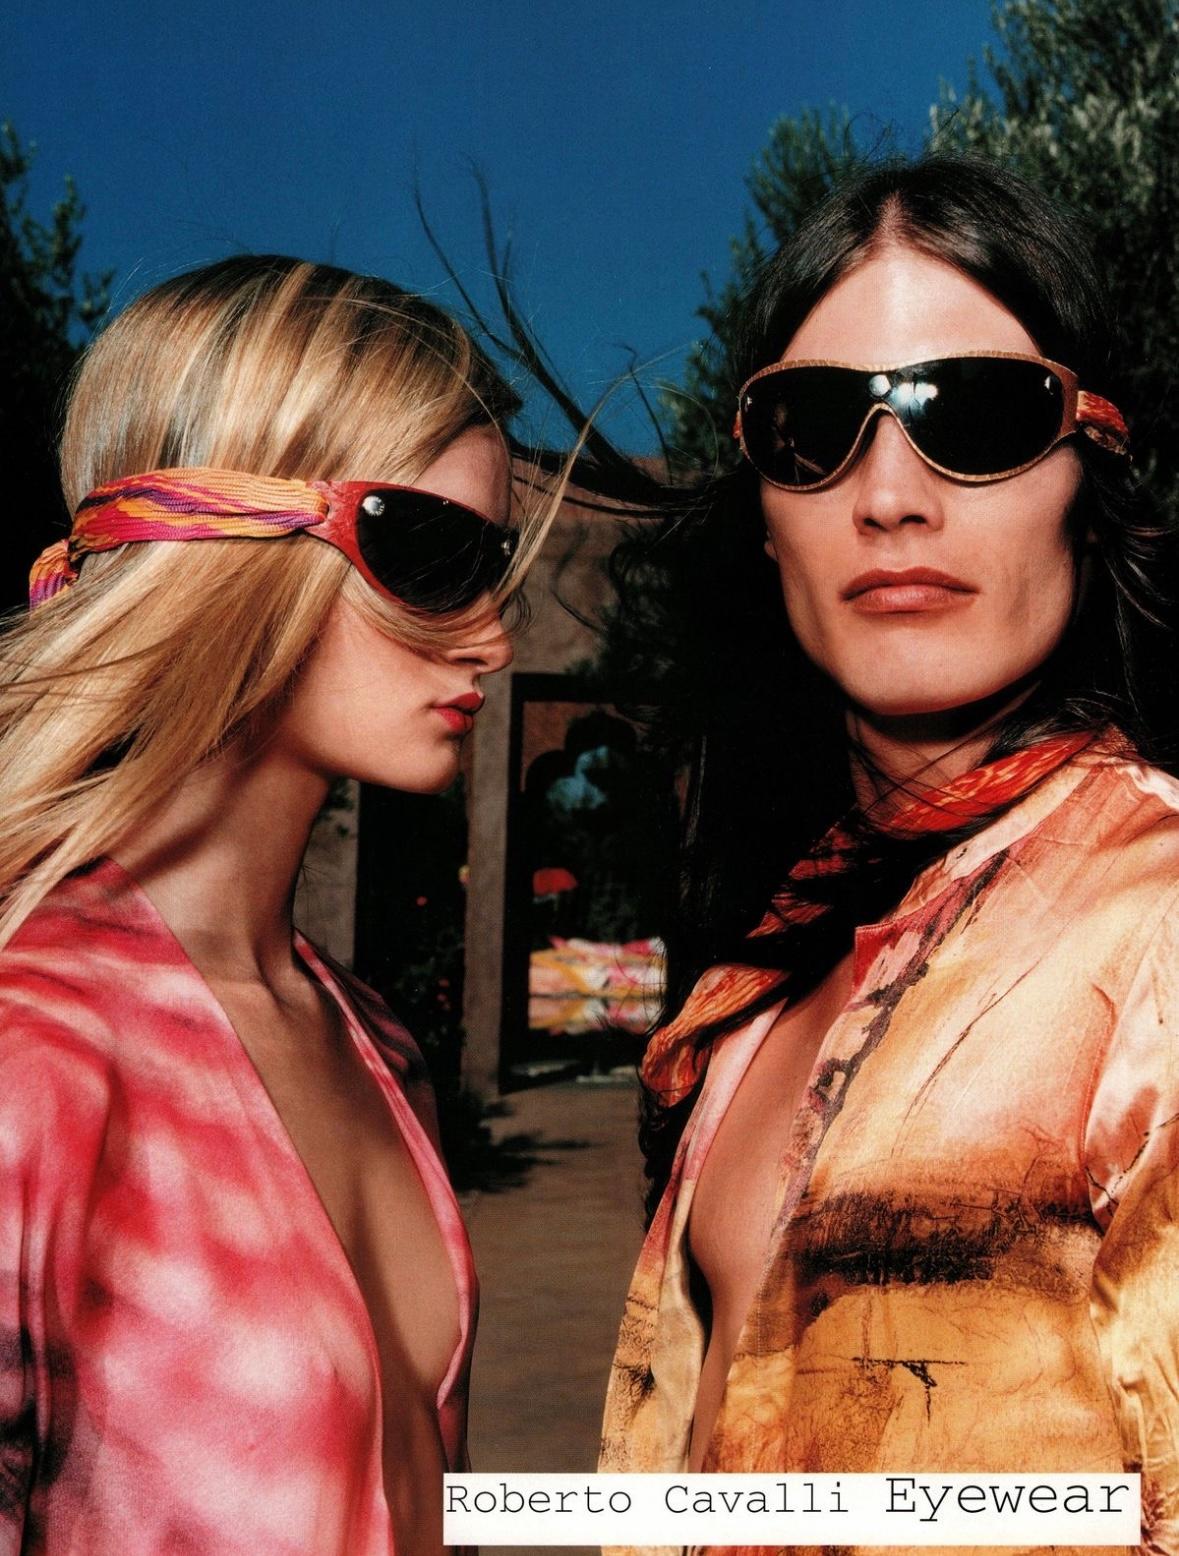 Ähnliche Sonnenbrillen wie diese hellblaue Roberto Cavalli Shield-Sonnenbrille aus der Kollektion Frühjahr/Sommer 2001 wurden in der Werbekampagne der Saison hervorgehoben. Diese einzigartige Sonnenbrille hat einen Lederrahmen und ein abnehmbares